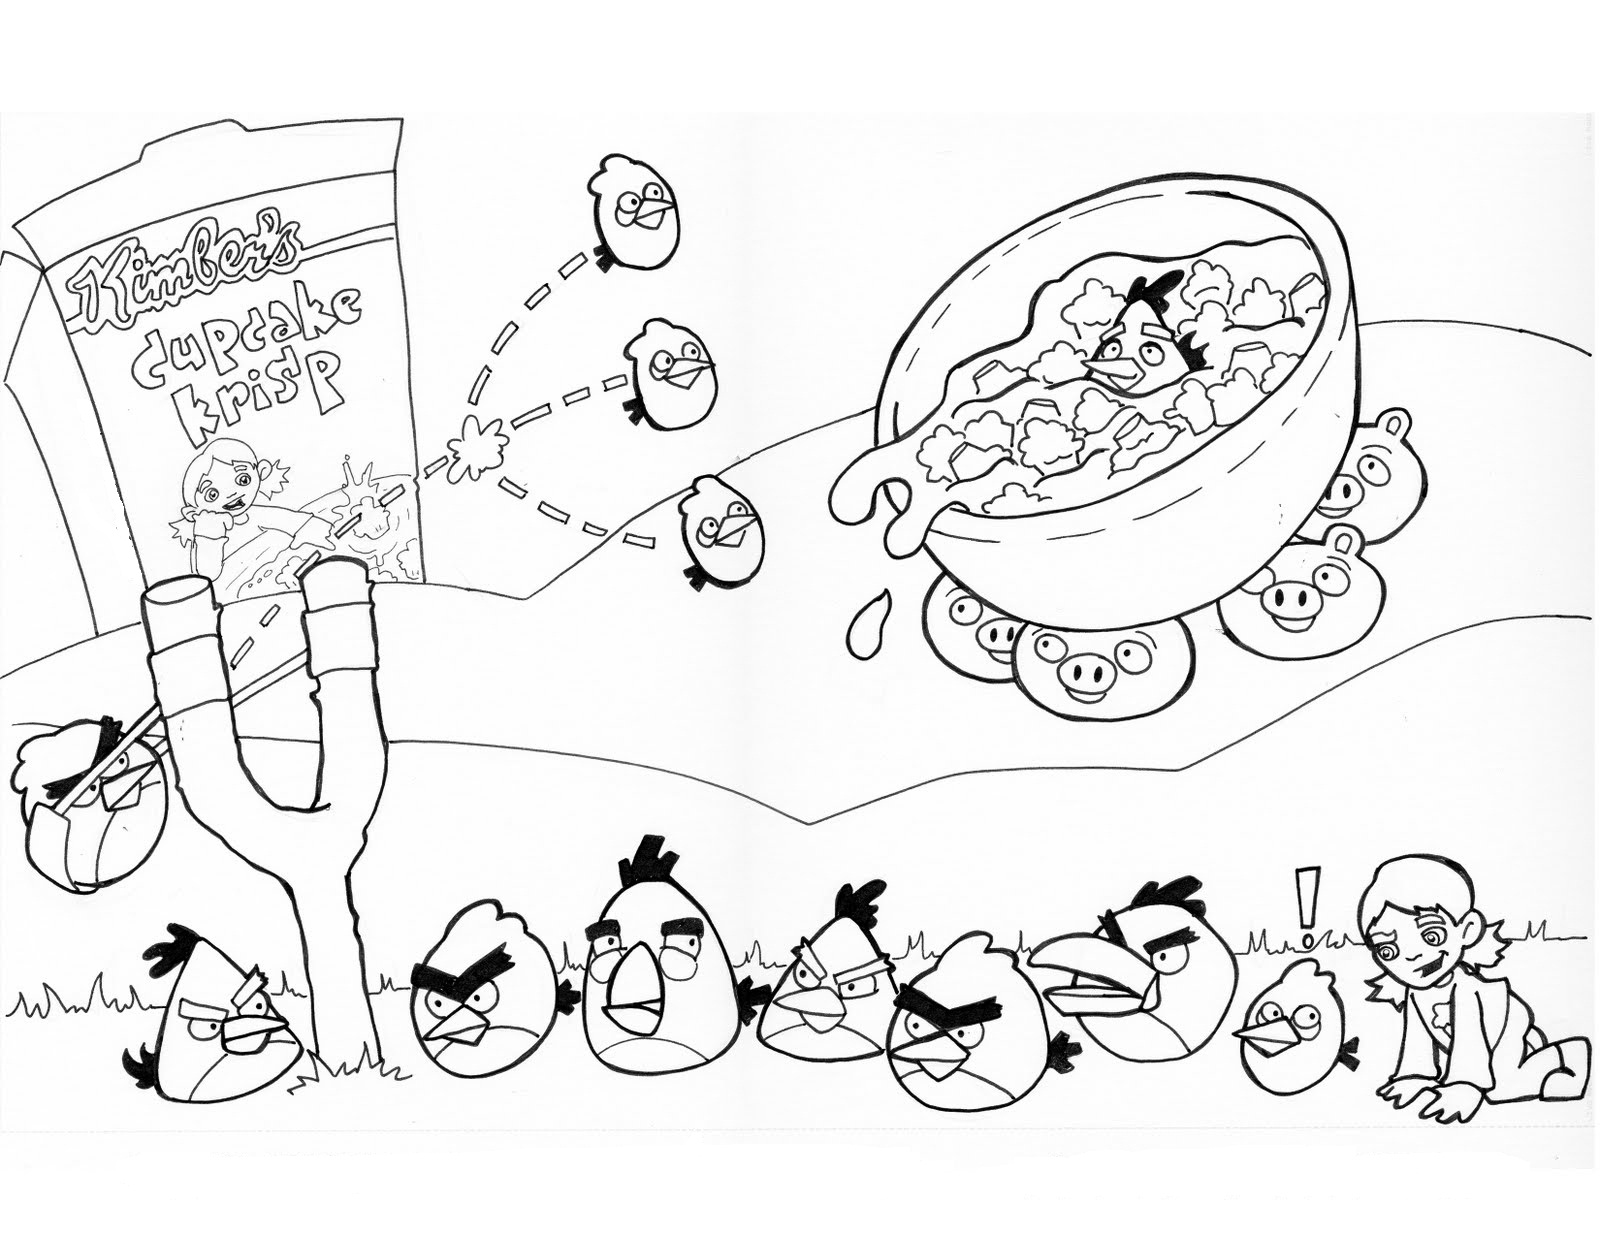 Disegni da colorare gratis Angry Birds (34)